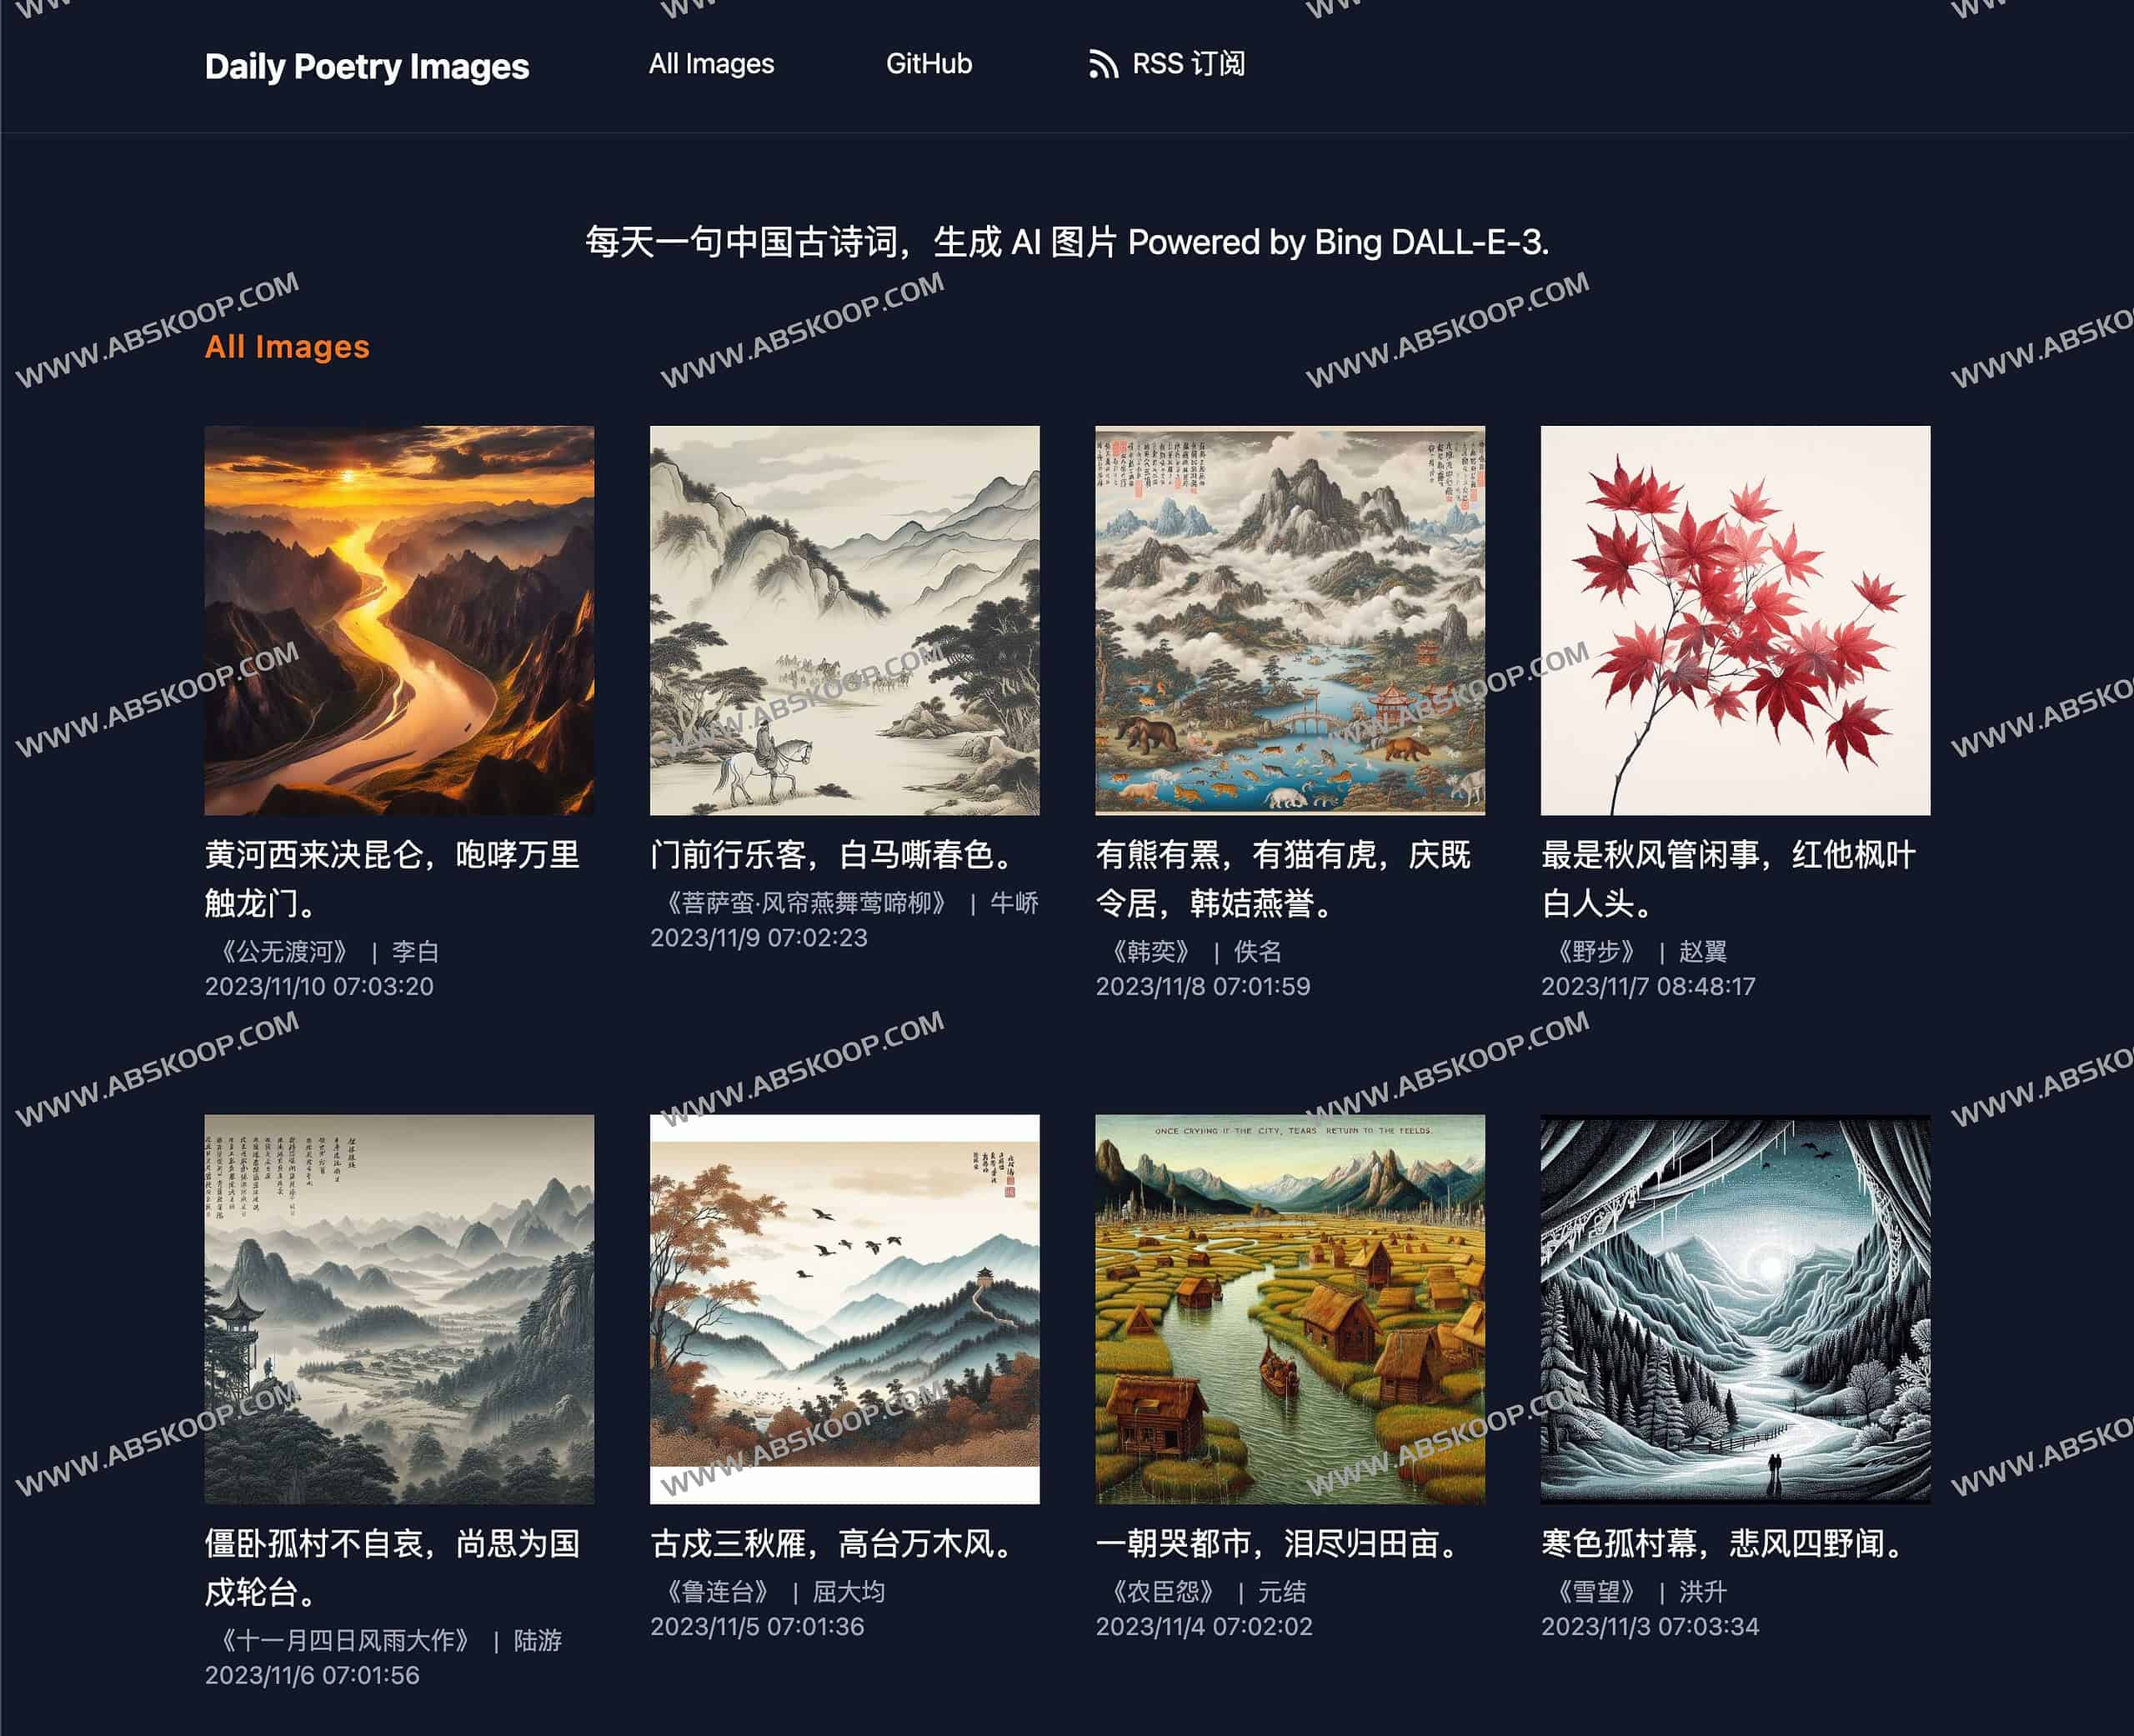 每天一句中国古诗词 使用Bing DALL-E-3生成 AI 图片-Daily Poetry Images 